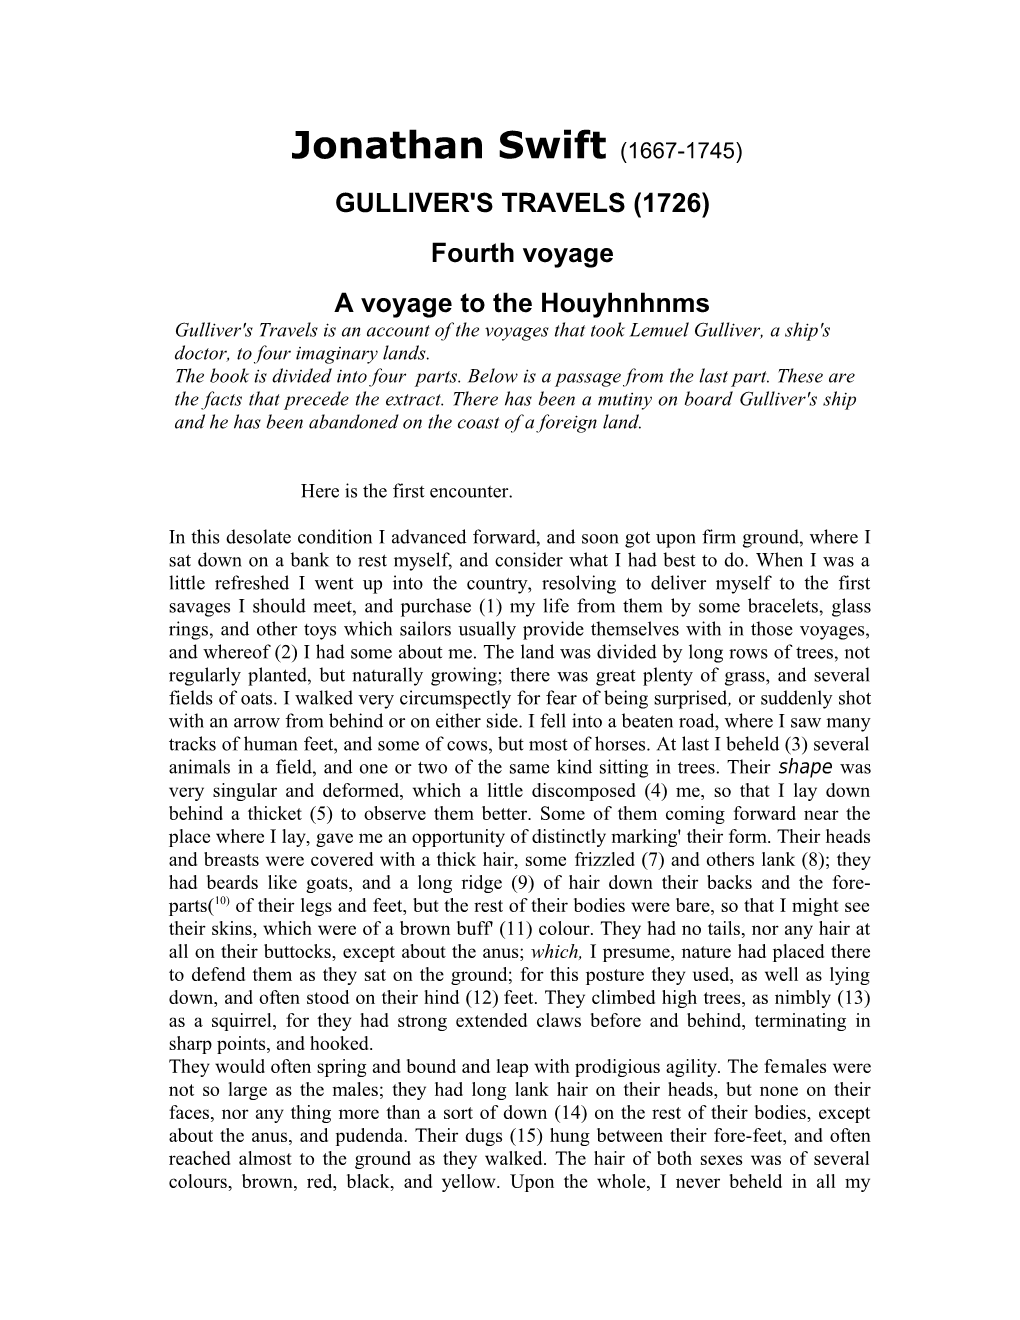 Gulliver's Travels (1726)